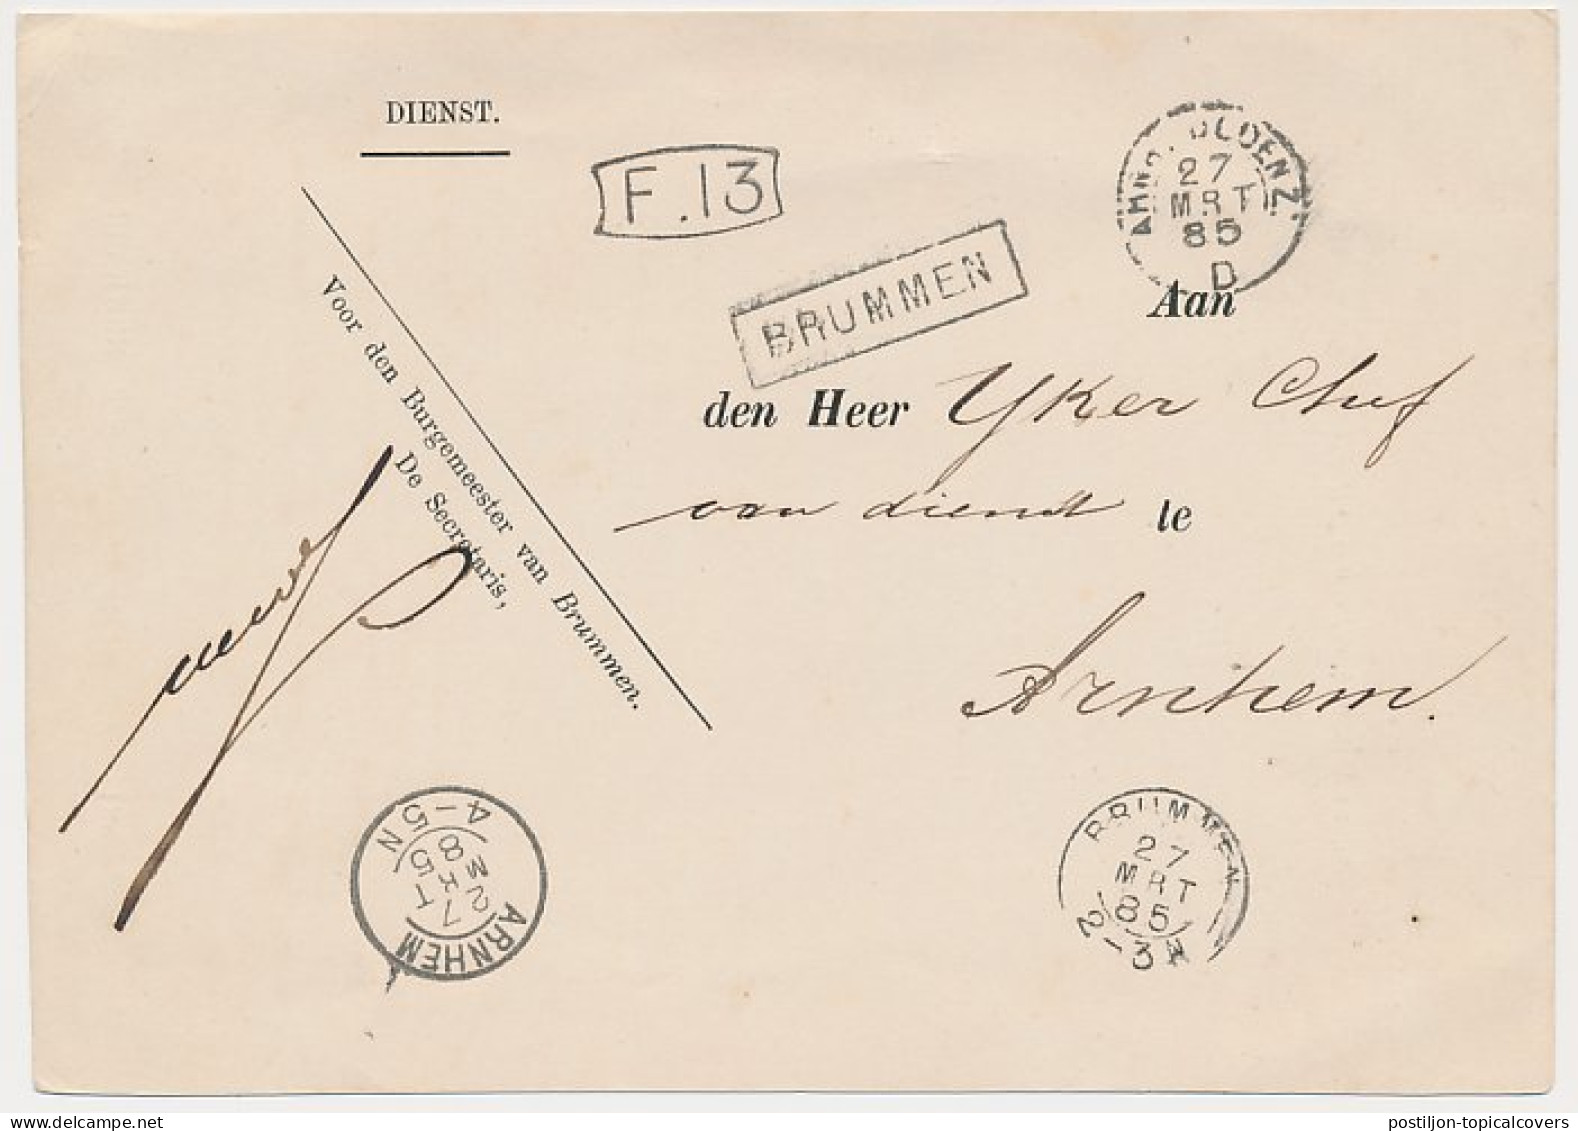 Trein Haltestempel Brummen 1885 - Briefe U. Dokumente